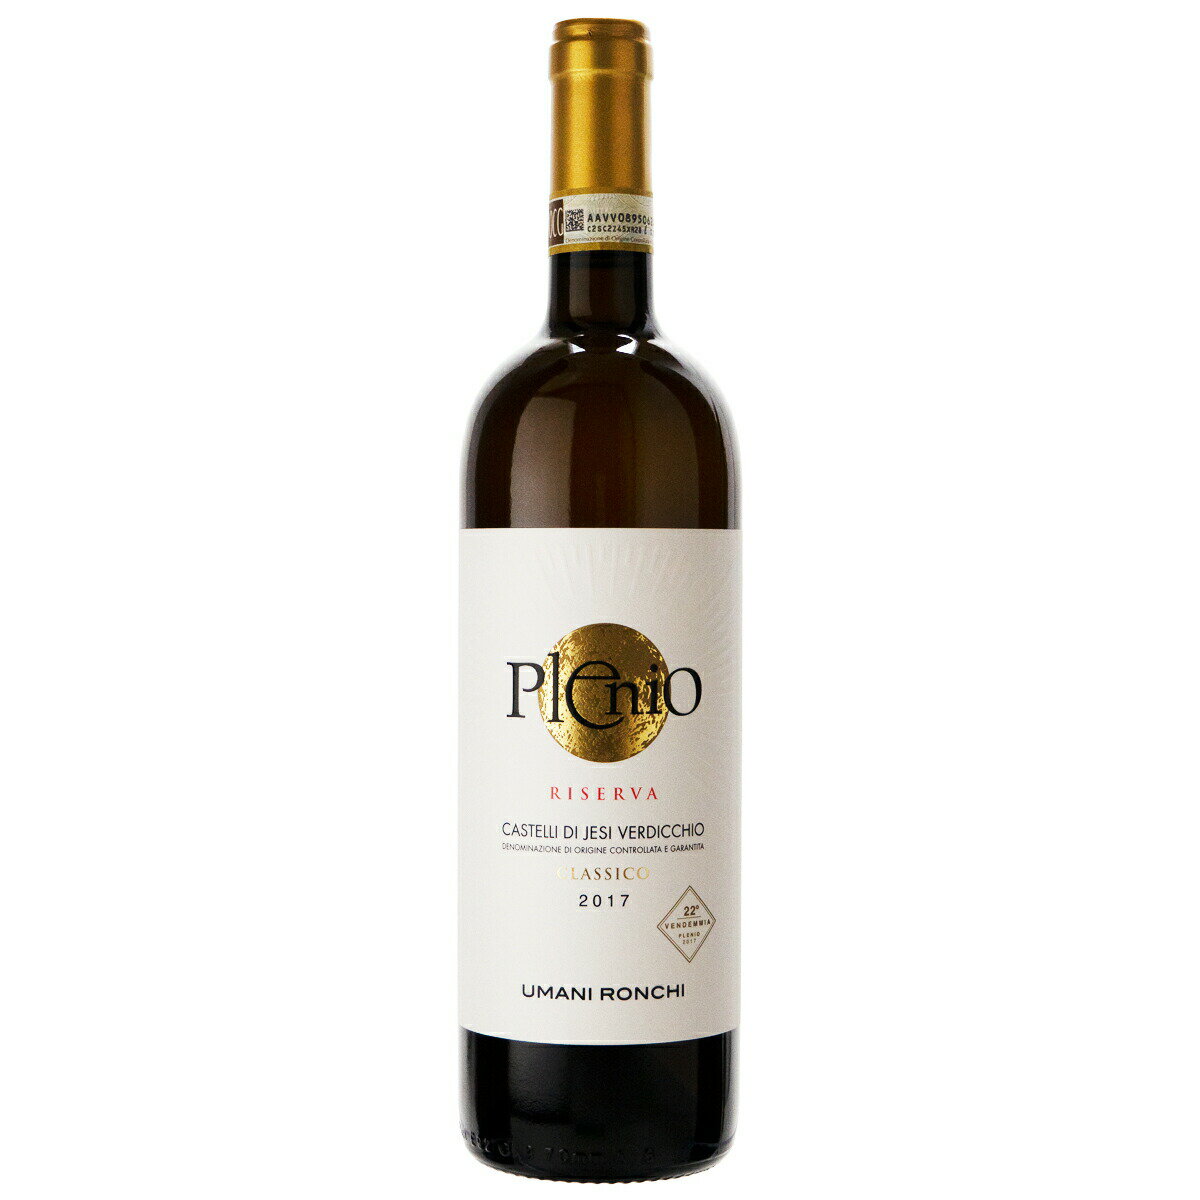 素晴らしいワインを数多く生み出す、マルケ州を代表するリーディングワイナリー。2012年度版ガンベロ・ロッソ誌では"カサル・ディ・セッラ・ヴェッキエ・ヴィーニェ"が「白ワイン・オブ・ザ・イヤー」に選ばれました。 ヴェルディッキオやモンテプルチアーノなど土着の品種を使った長期熟成の偉大なワインのみでなく、デイリーに楽しめるコストパーフォーマンスの高いワインにも定評があります。 マルケ州のリーディングワイナリー イタリア中部の東海岸、美しい自然に恵まれたマルケ州のワイナリー、ウマニ・ロンキ社。設立は1955年。いち早く近代的な畑の管理法やブドウ栽培法、新しいワイン醸造法を取り入れました。 近年ではガンベロロッソ誌を始め、国際的にも評価の高いワイン醸造家、ジュゼッペ・カヴィオラ（Giuseppe Caviola）氏をコンサルタントに迎え、バリック熟成を取り入れた"レ・ブスケ"や"クマロ"、また「スーパー・マルケ」と言われる"ペラゴ"など、優れたワインを生み出しています。 マルケ州のリーダー的な存在であるとともに、そのコストパフォーマンスのよさで知られる同社のワインには、気軽にワインを楽しんでほしいという熱い思いが込められています。 ※ウマニ・ロンキ社はマルケ州とアブルッツォ州にブドウ畑と醸造所を所有しています。 2004年4月には、同社オーナーのベルネッティ家に伝わる紋章から、"すい星"を模したロゴを発表。 幸運のサインとして知られるシューティングスターがウマニ・ロンキ社のシンボルマークとなりました。 商品説明 熟したフルーツやバニラの複雑な香りに、リンゴやアーモンドを思わせる、長い余韻が印象的なワインです。“プレーニオ”とは、ラテン語の plenum（完全）に由来し、このワインの複雑さ、華やかさを表しています。 NamePlenio Castelli di Jesi Verdicchio Riserva Classico 生産地イタリア・マルケ州 生産者ウマニ・ロンキ 生産年2014・2017 タイプ白ワイン ブドウ品種ヴェルディッキオ 味わいフルボディ アルコール度数13% 内容量750ml